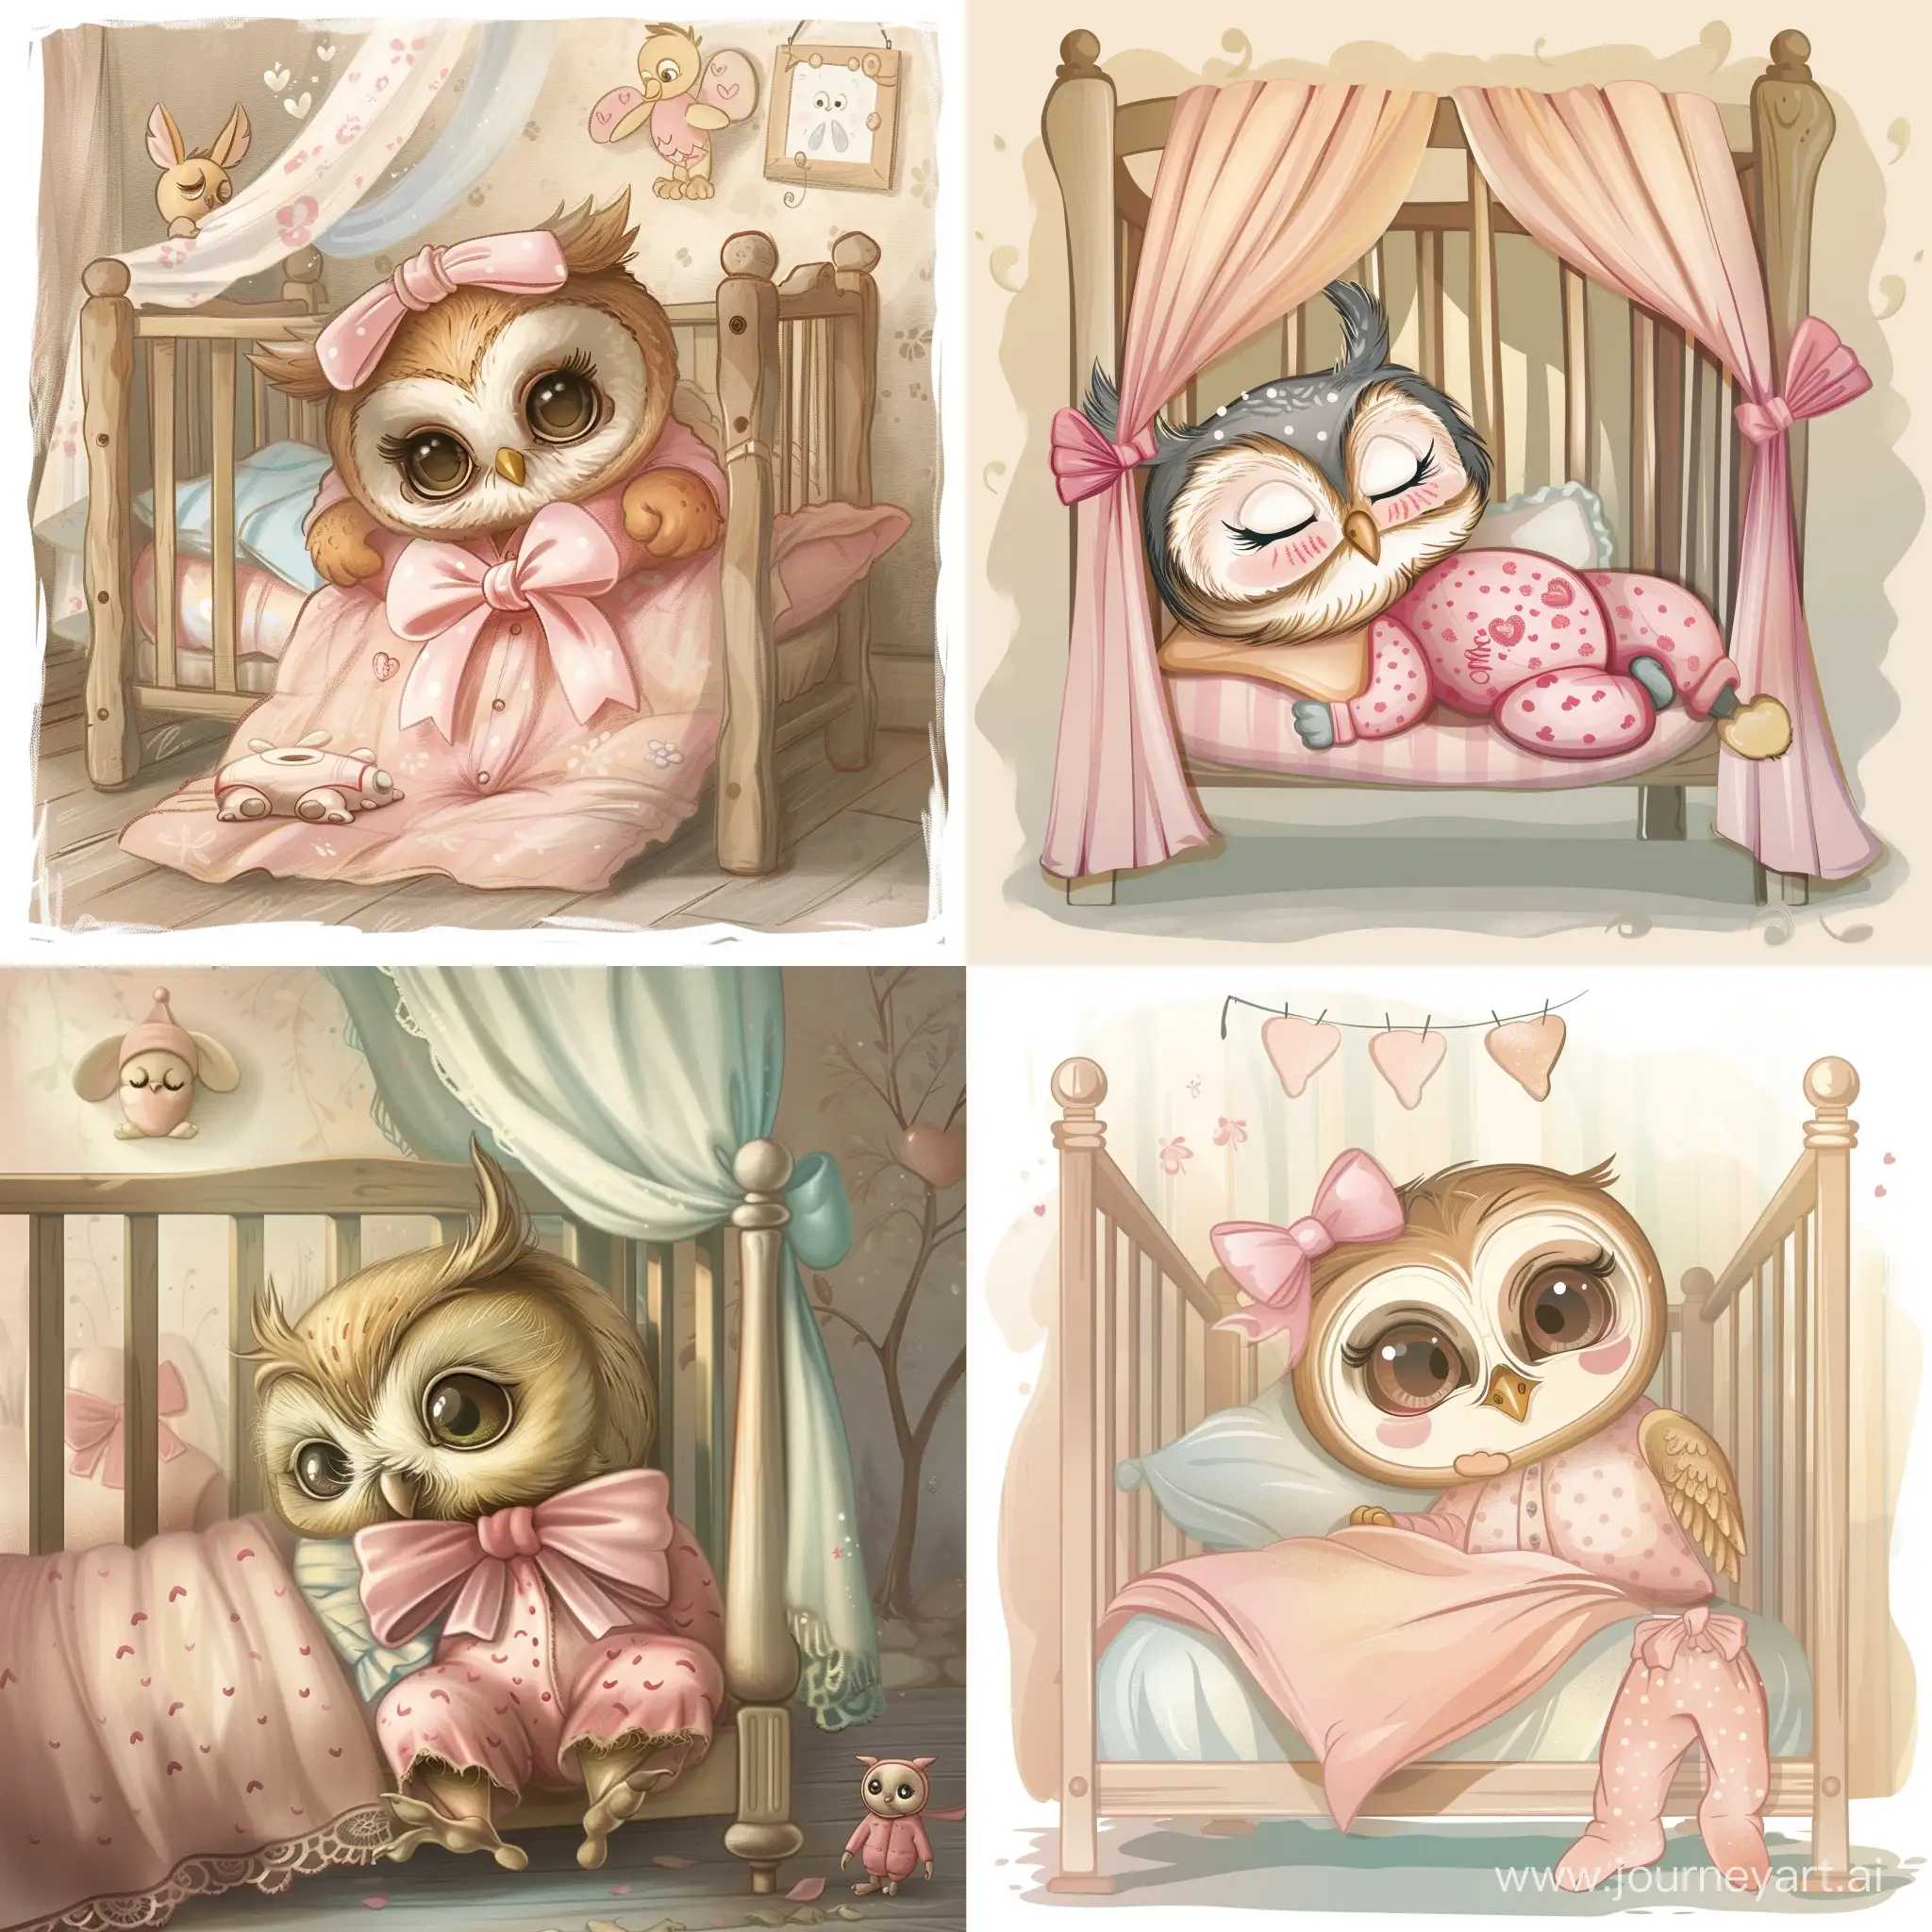 милая совушка идёт спать в кровать, с розовым бантиком, в розовой пижаме, рядом с кроваткой, сладких снов малышка, в романтическом стиле, в стиле мультика disney